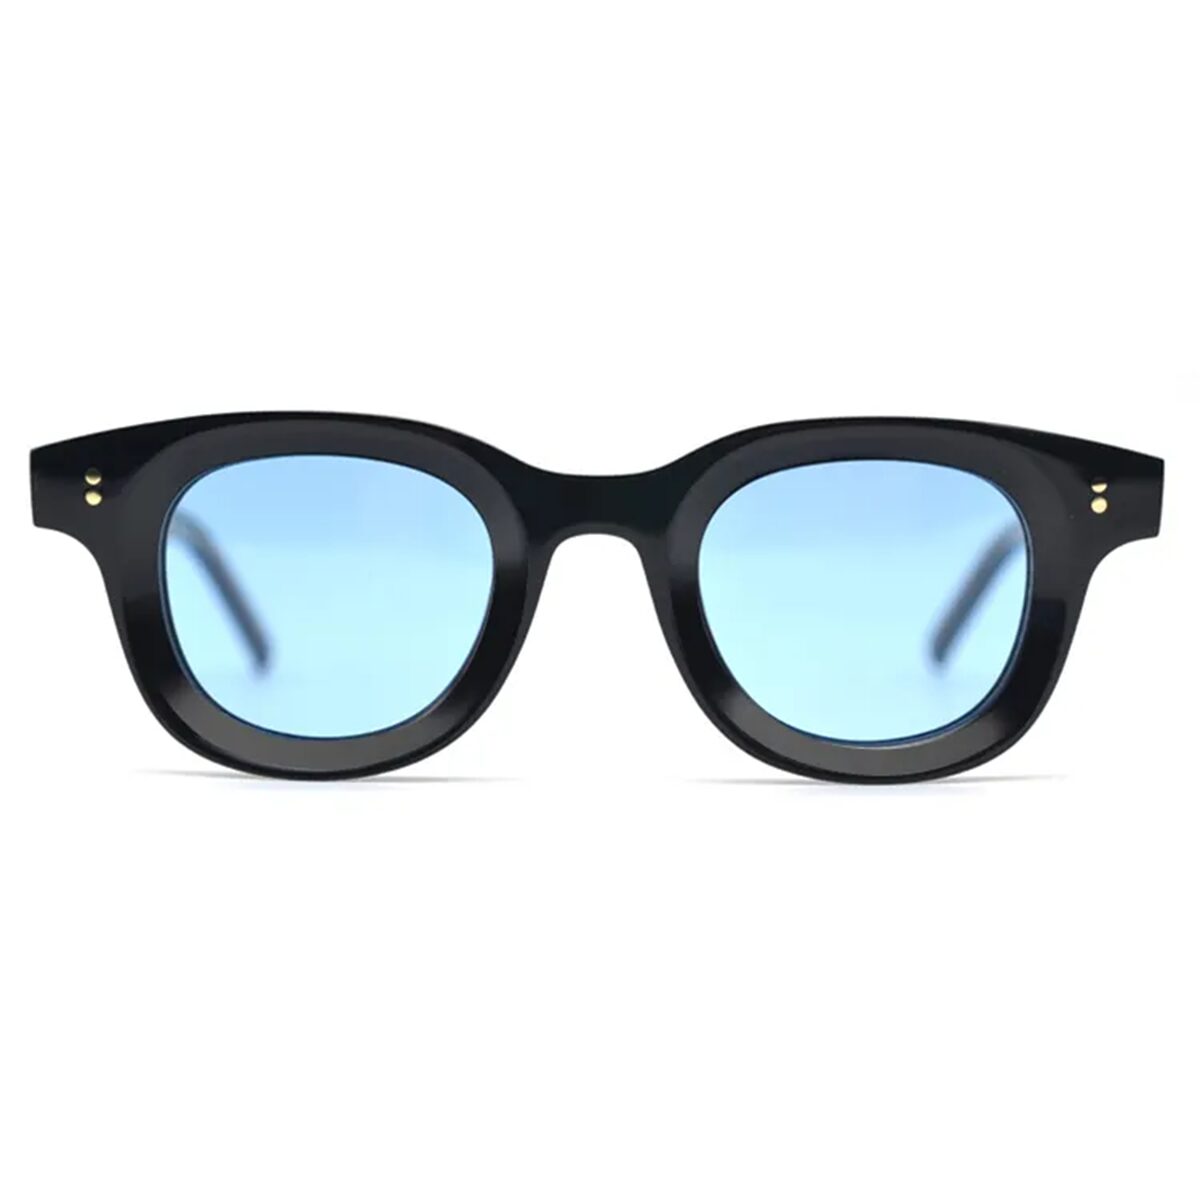 KOKO BLEU, luxe ronde zonnebril uit de KOKO Zonnebrillencollectie van AKA SAVRAN